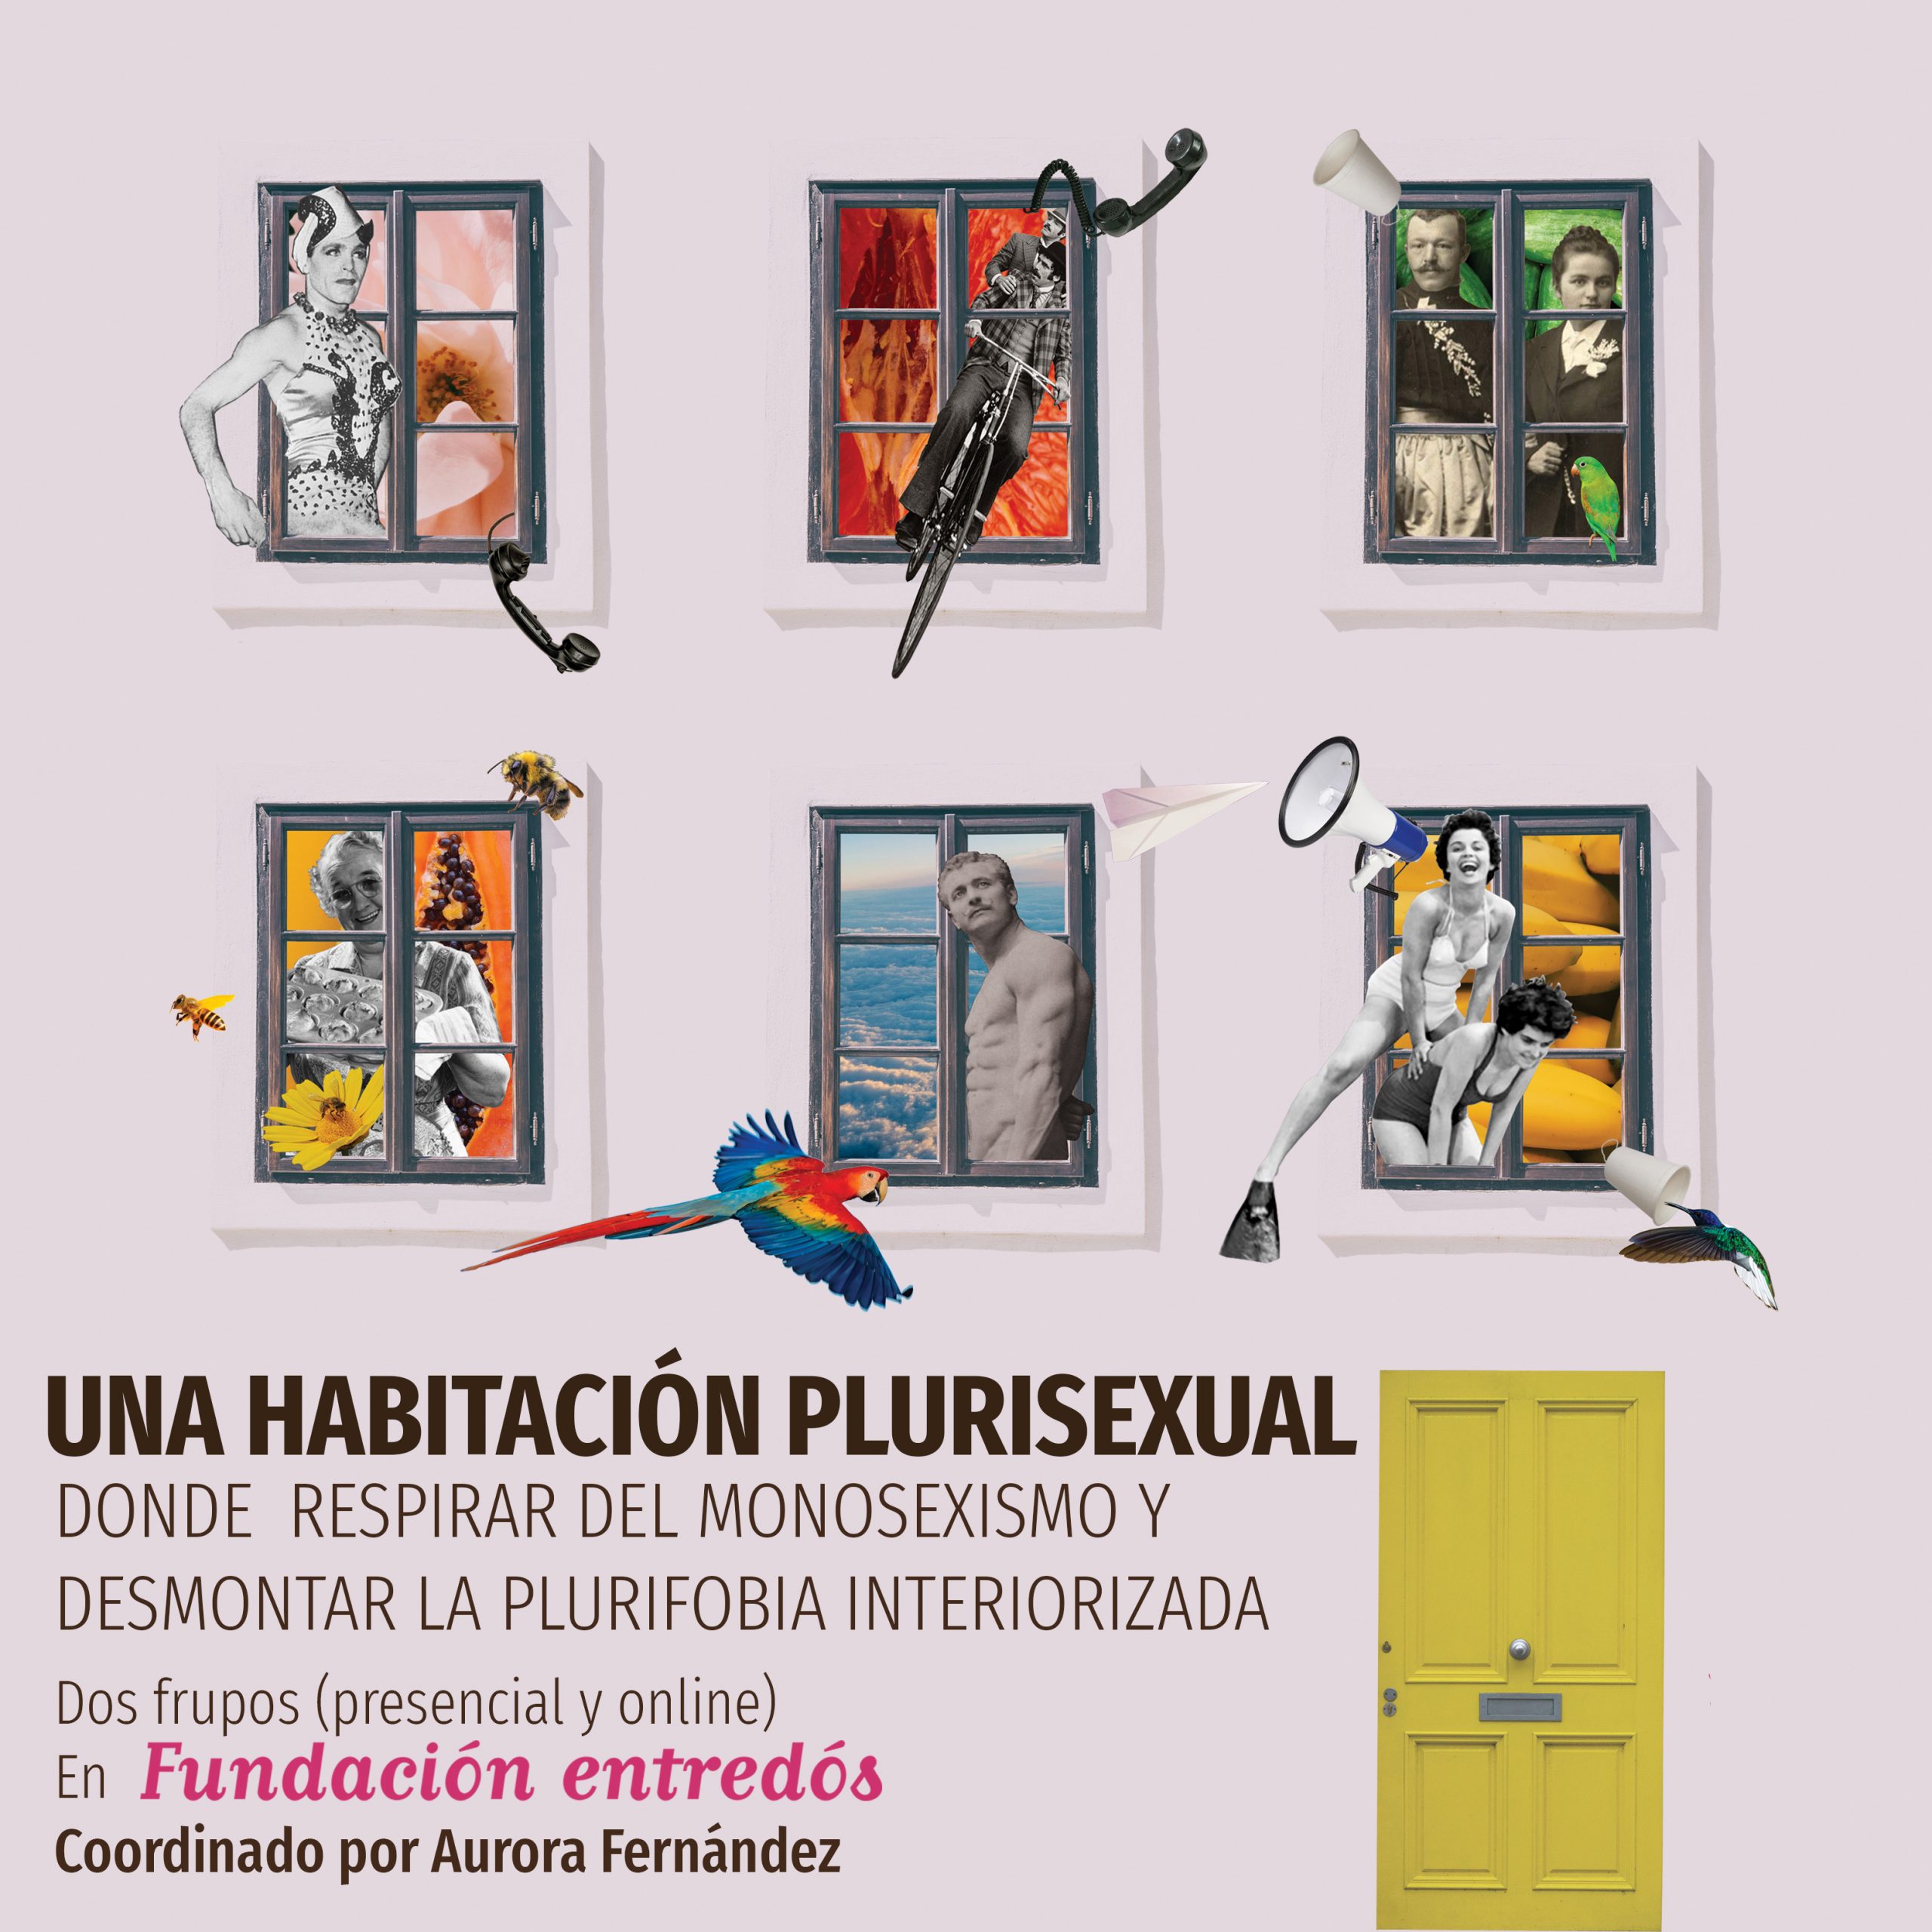 plurisexualidad-plurifobia-bisexualidad-pansexualidad-salud-plurisexual-monosexismo-bifobia-polisexualidad-homnisexualidad